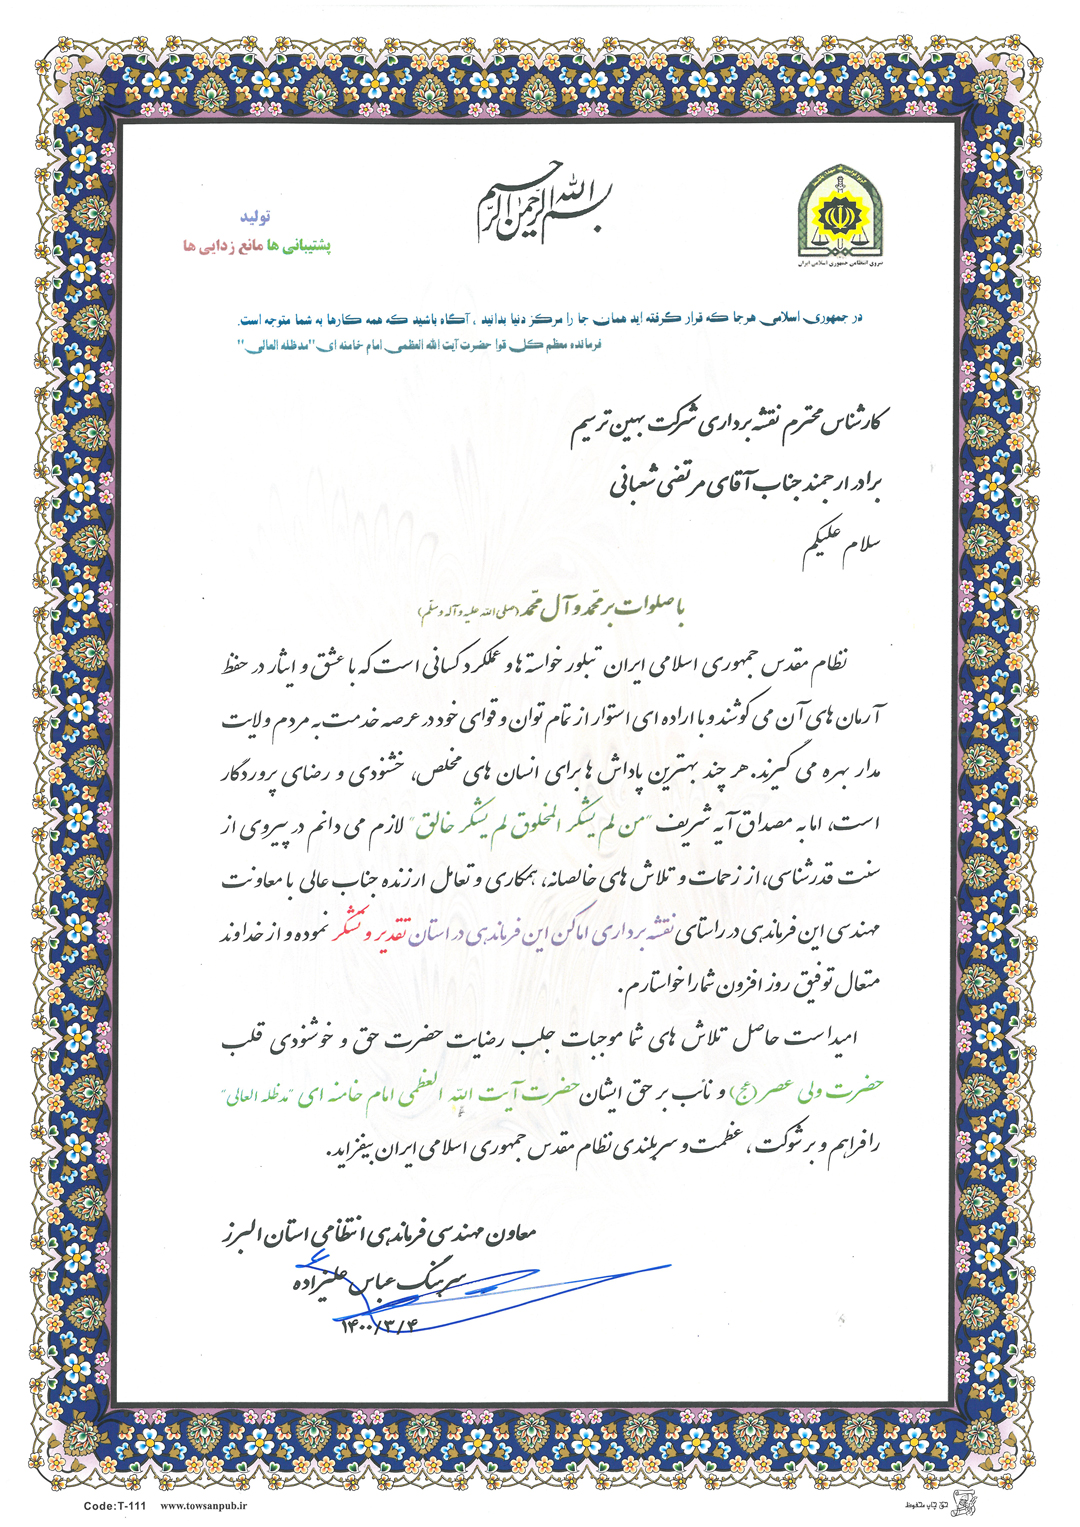 نقدیر نامه از طرف ستاد فرماندهی نیروی انتظامی استان البرز